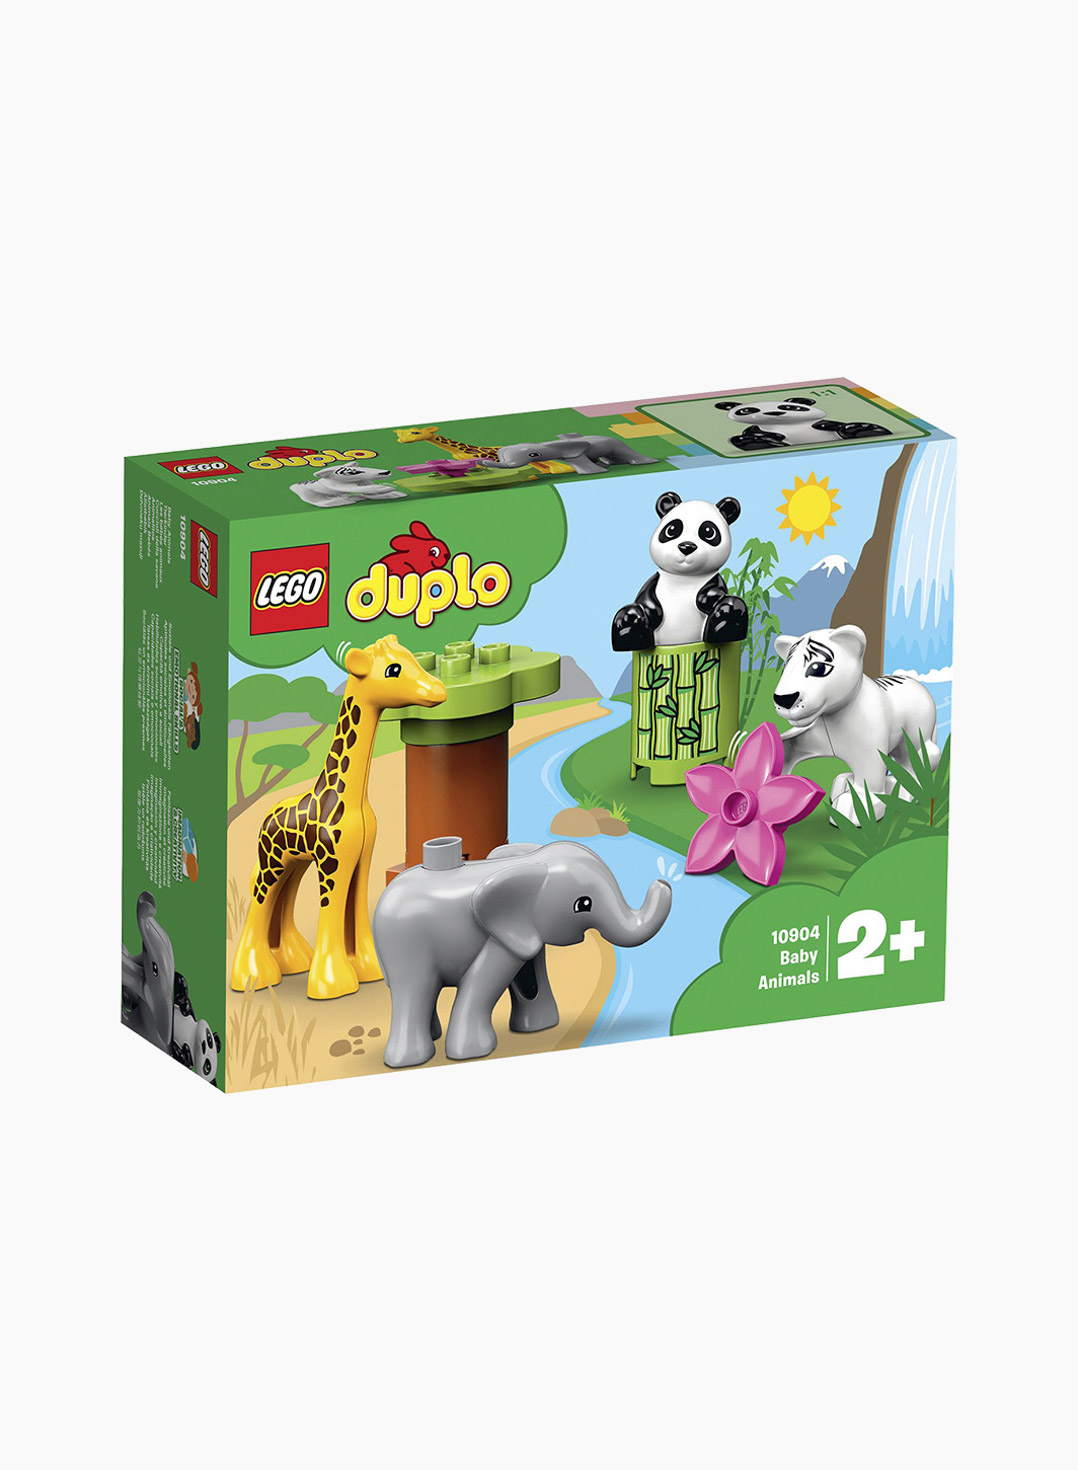 Lego Duplo Constructor Baby Animals